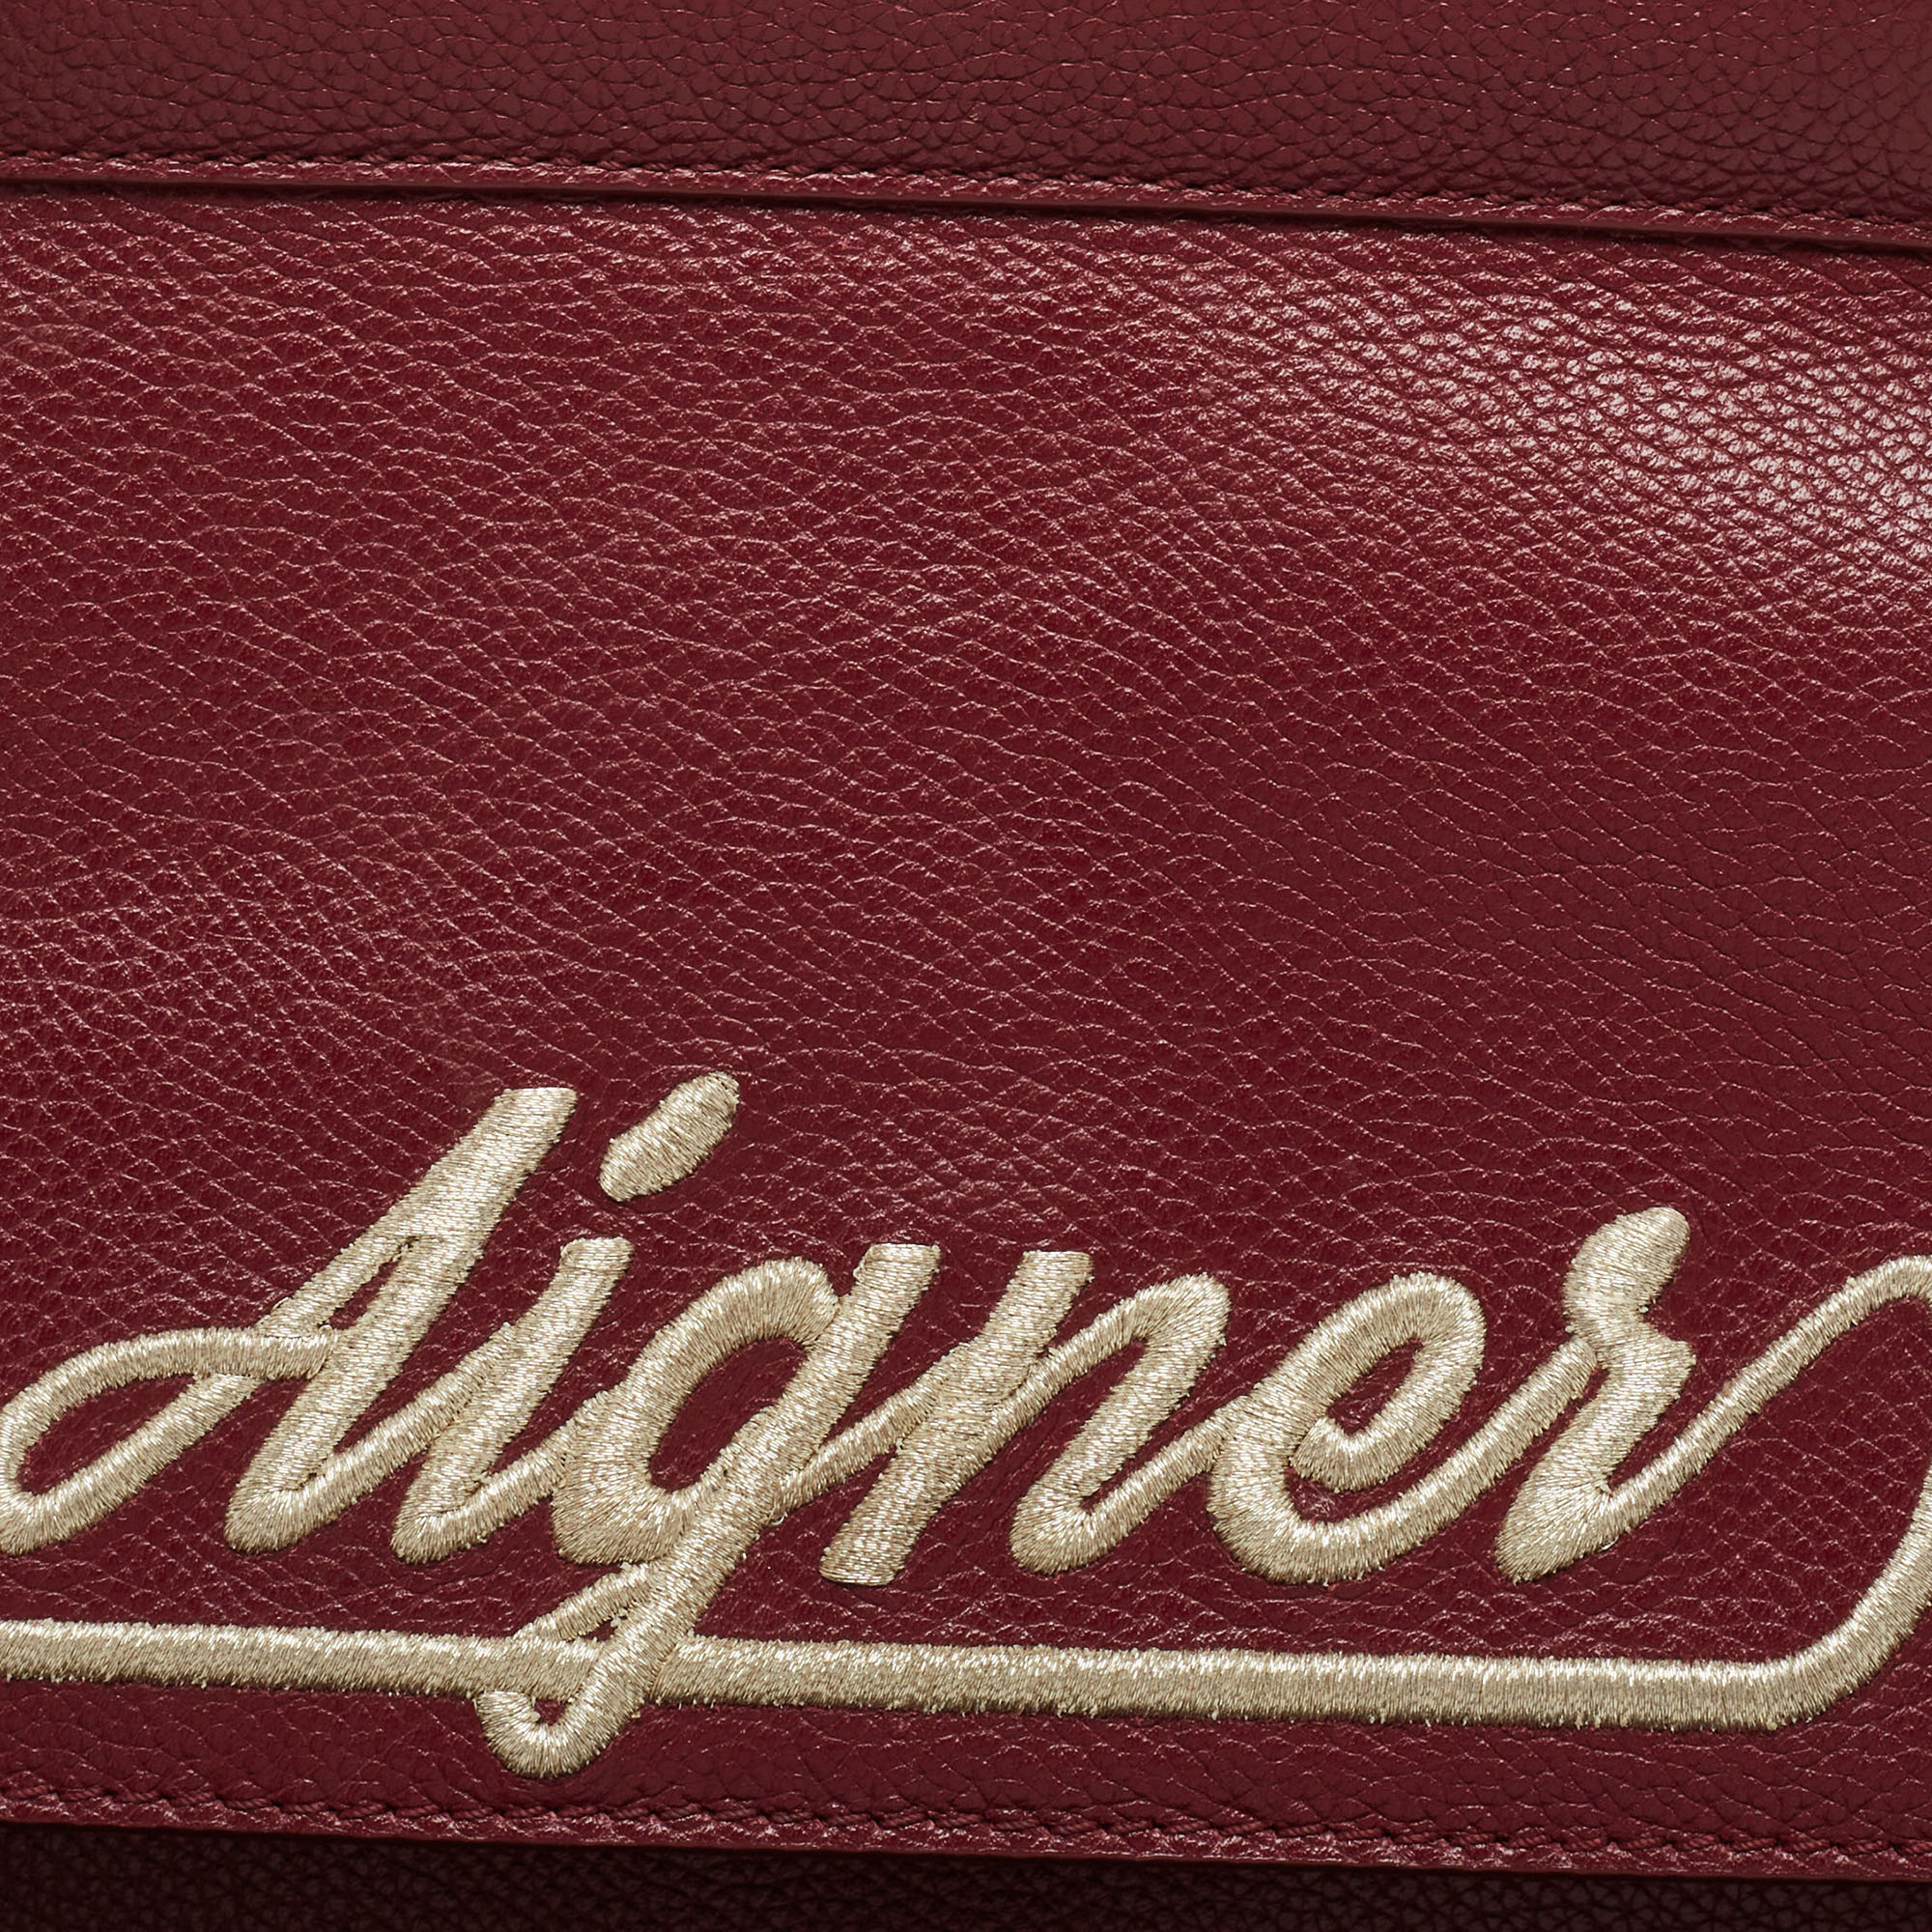 Aigner Dark Red Leather Embroidered Logo Shoulder Bag